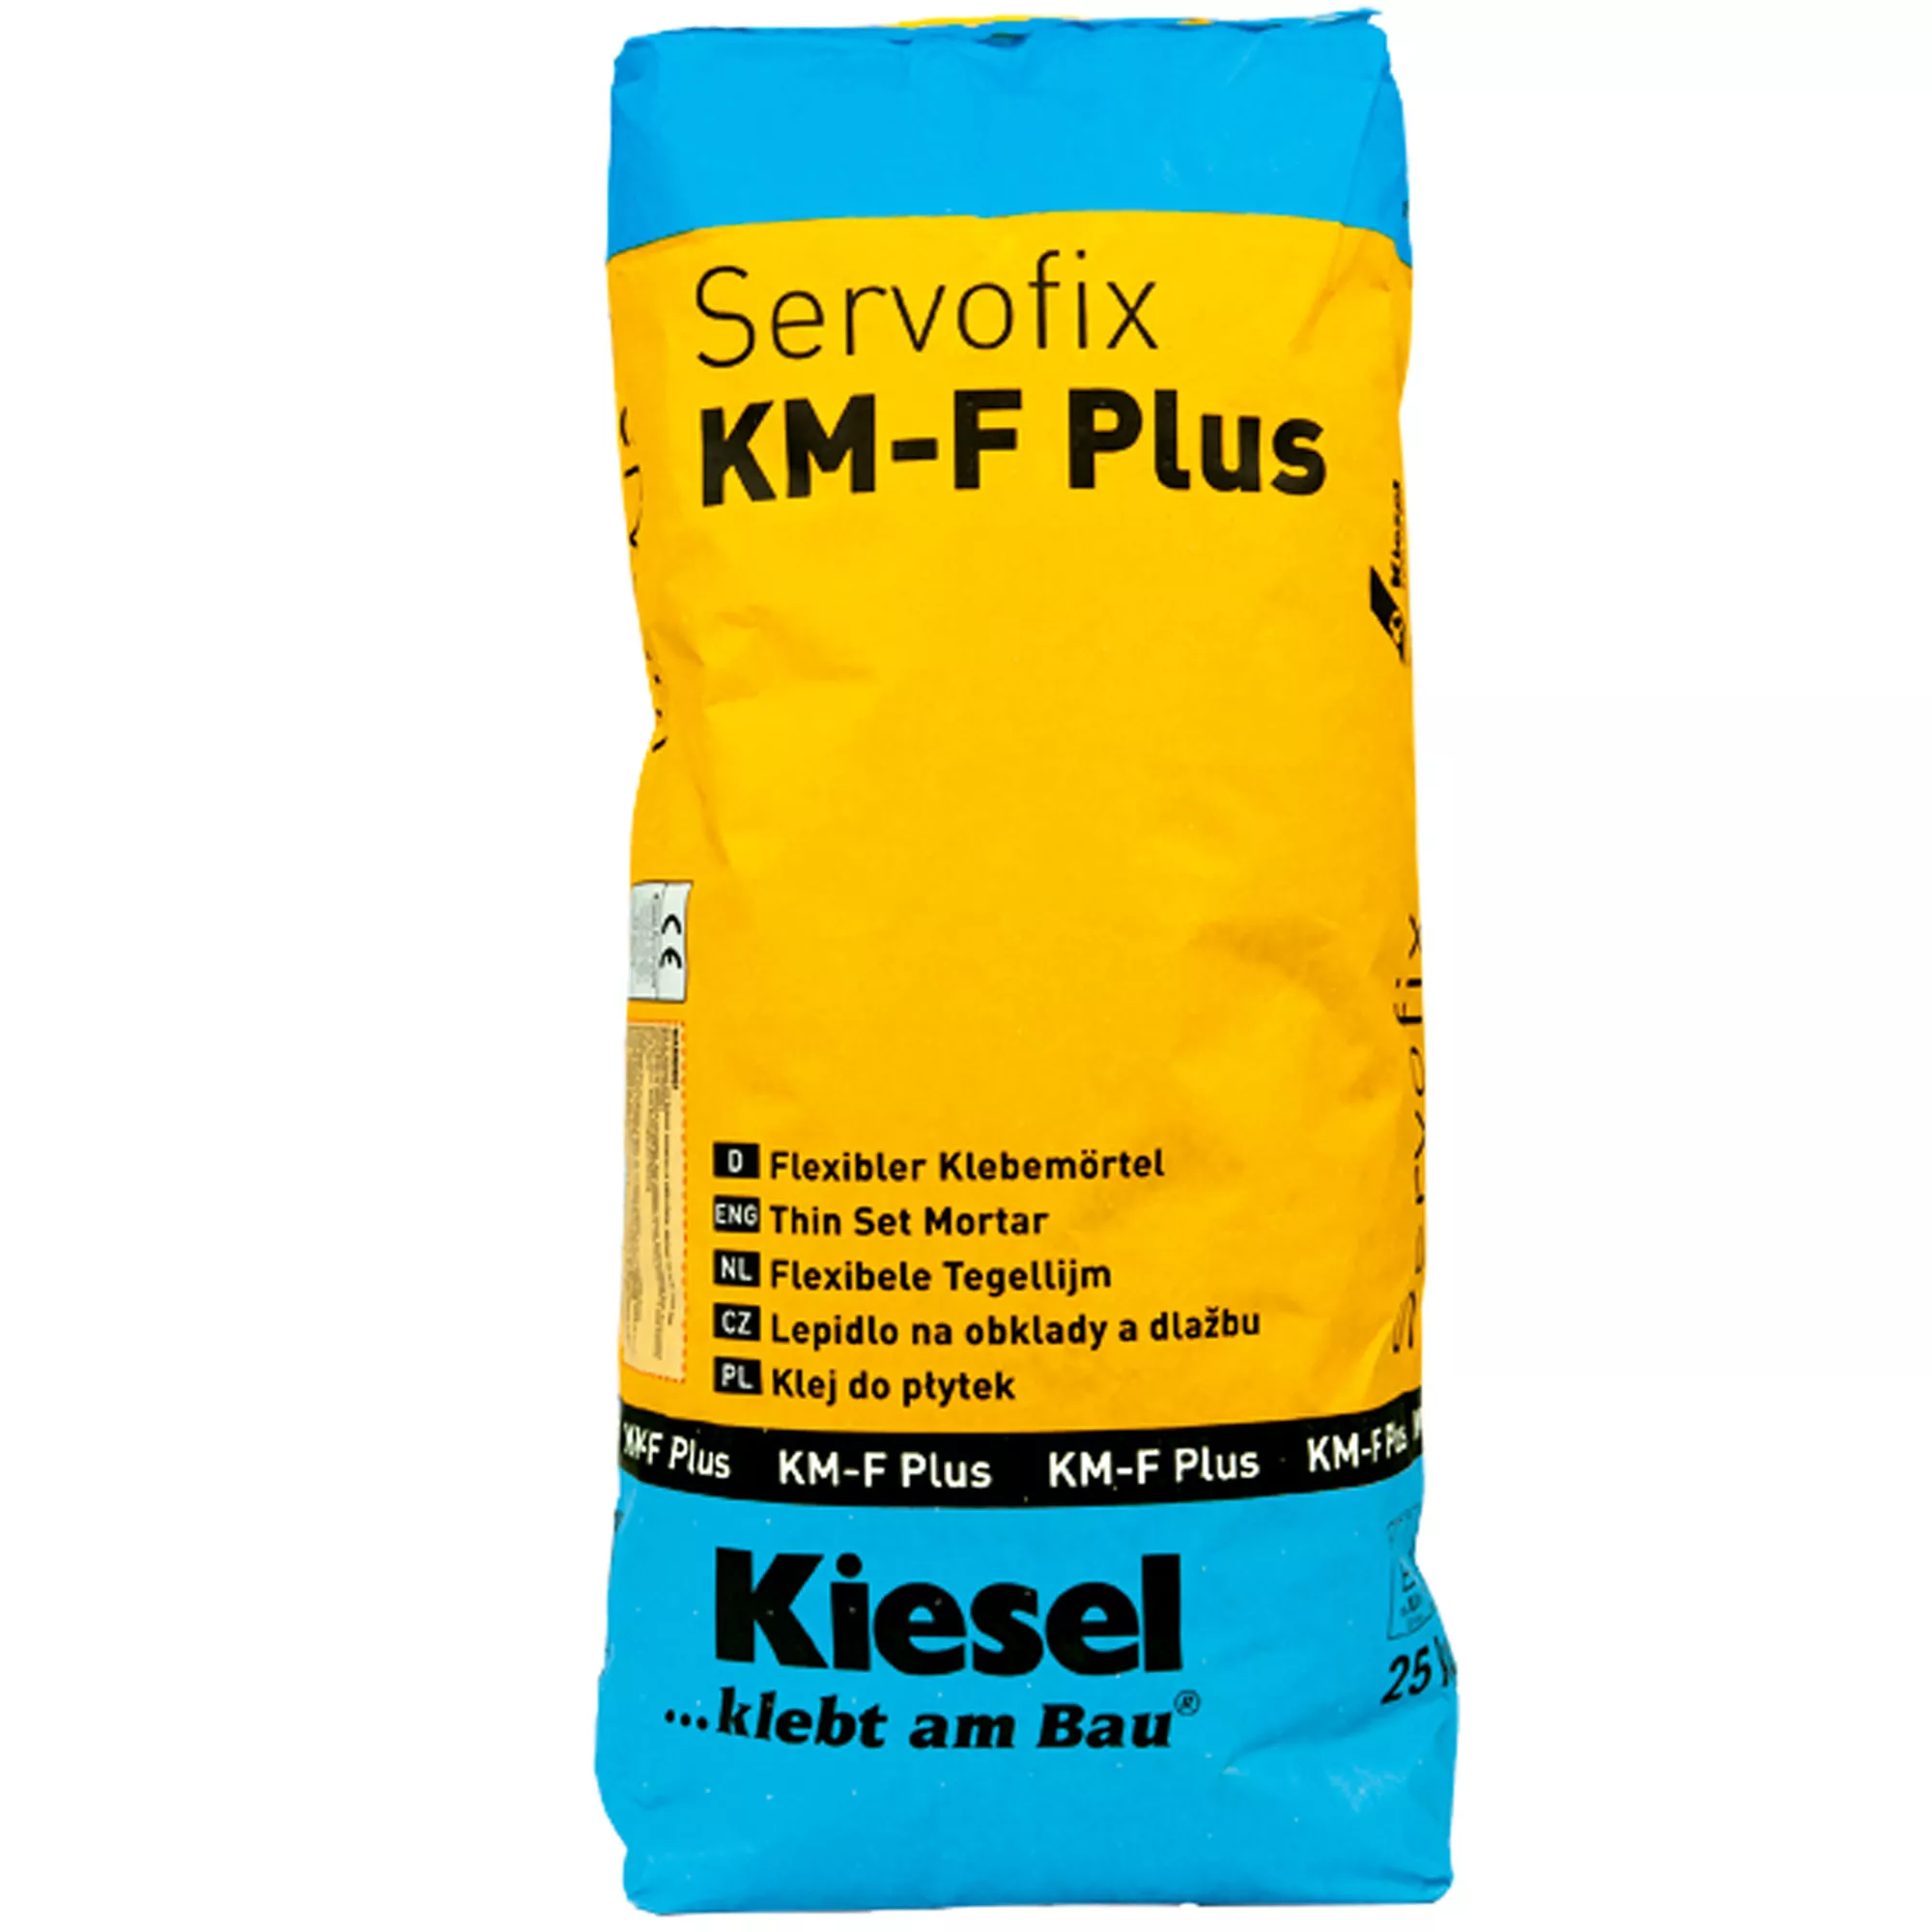 Kiesel Fliesenkleber Servofix KM-F Plus - flexibler Klebemörtel Feinsteinzeug, Keramische Fliesen (25KG)